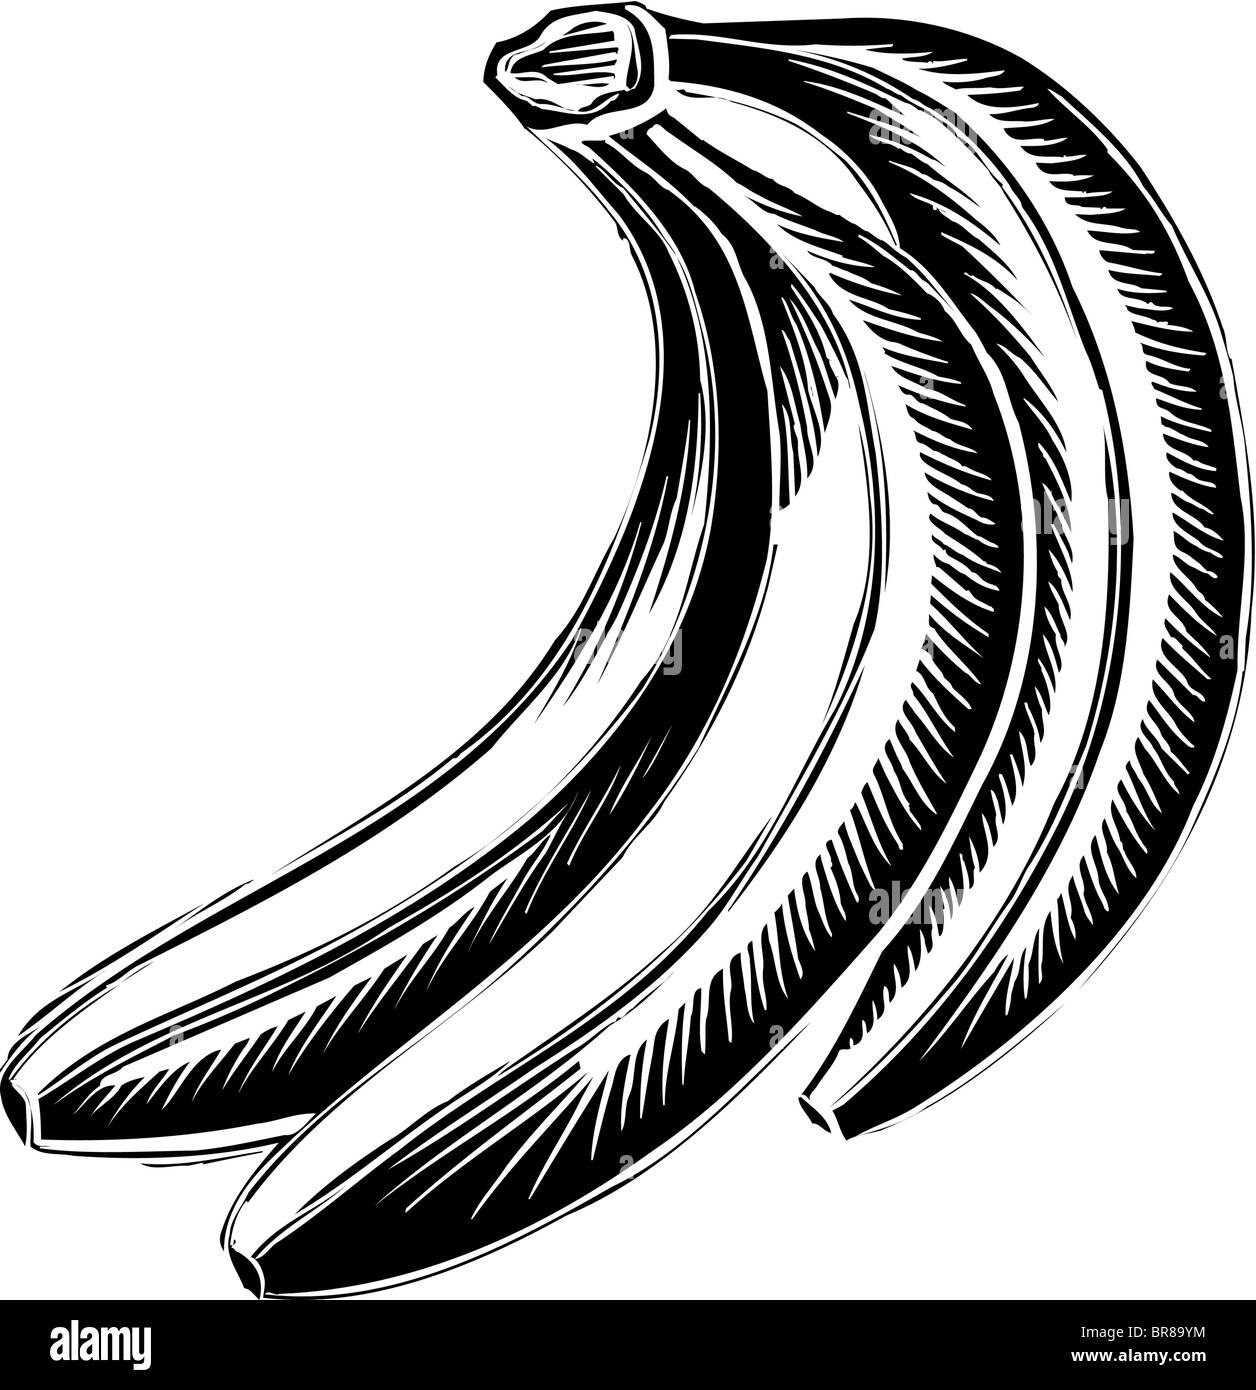 Eine bildliche Darstellung einer Reihe von Bananen Stockfoto